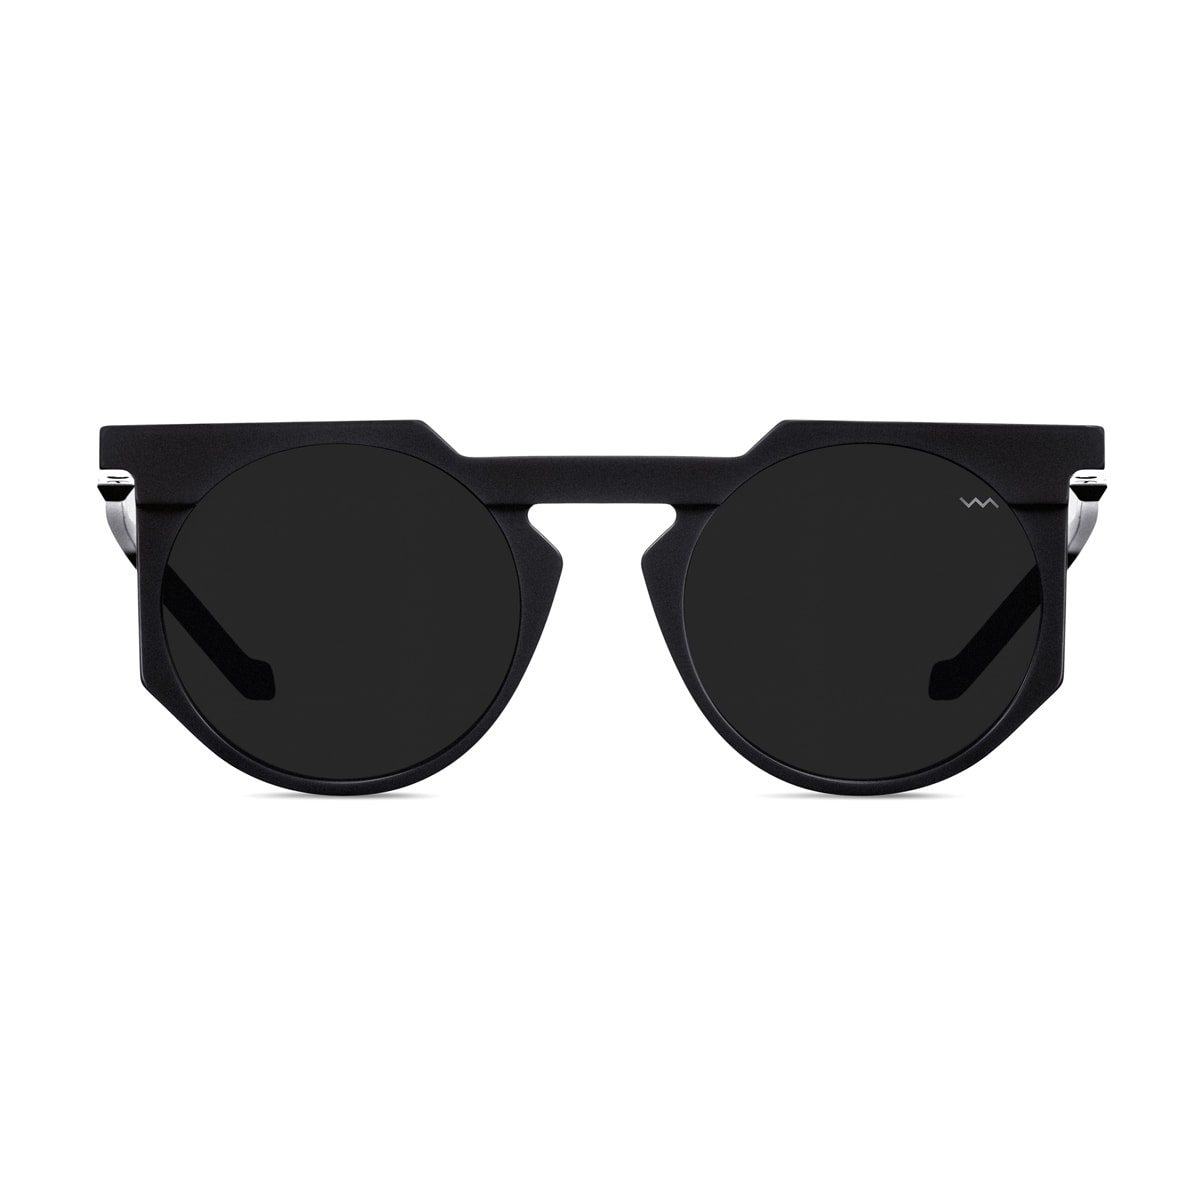 Wl0026 White Label Black Matte Sunglasses